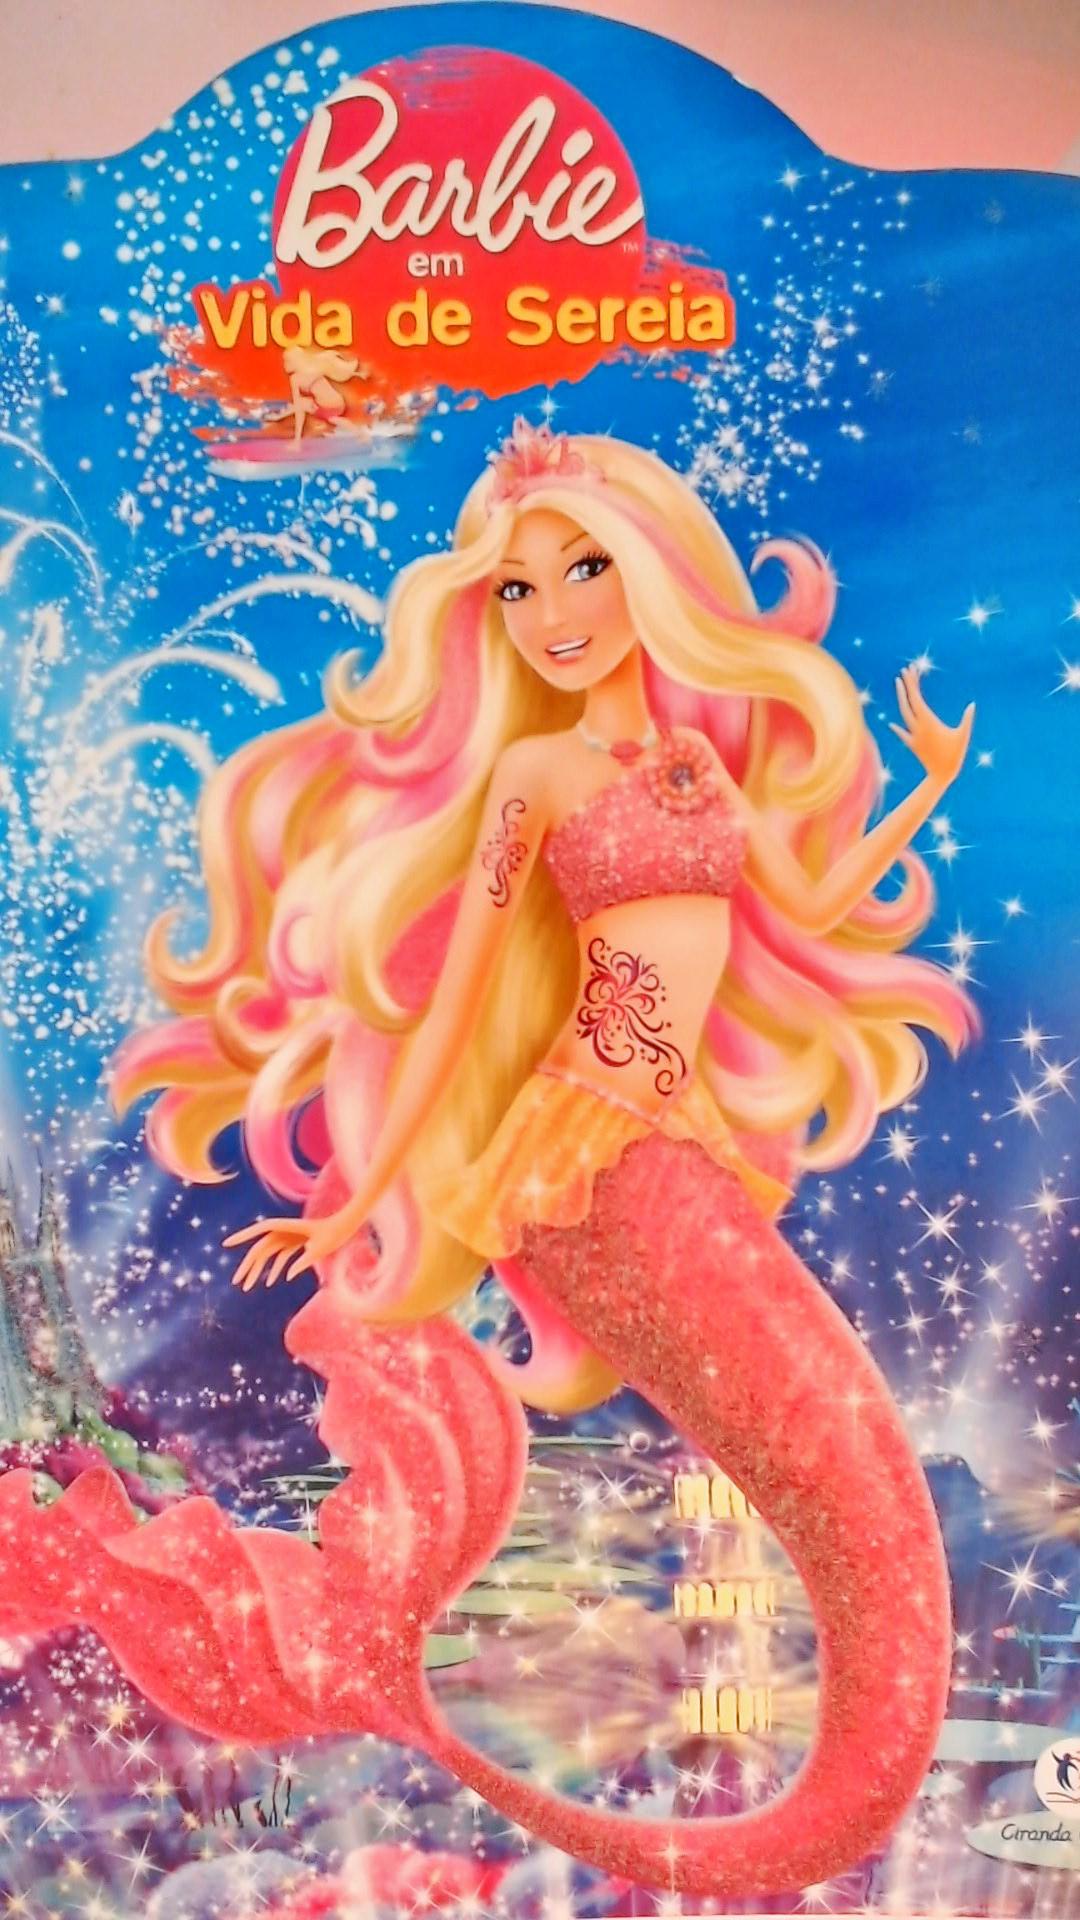 Barbie em Vida de Sereia